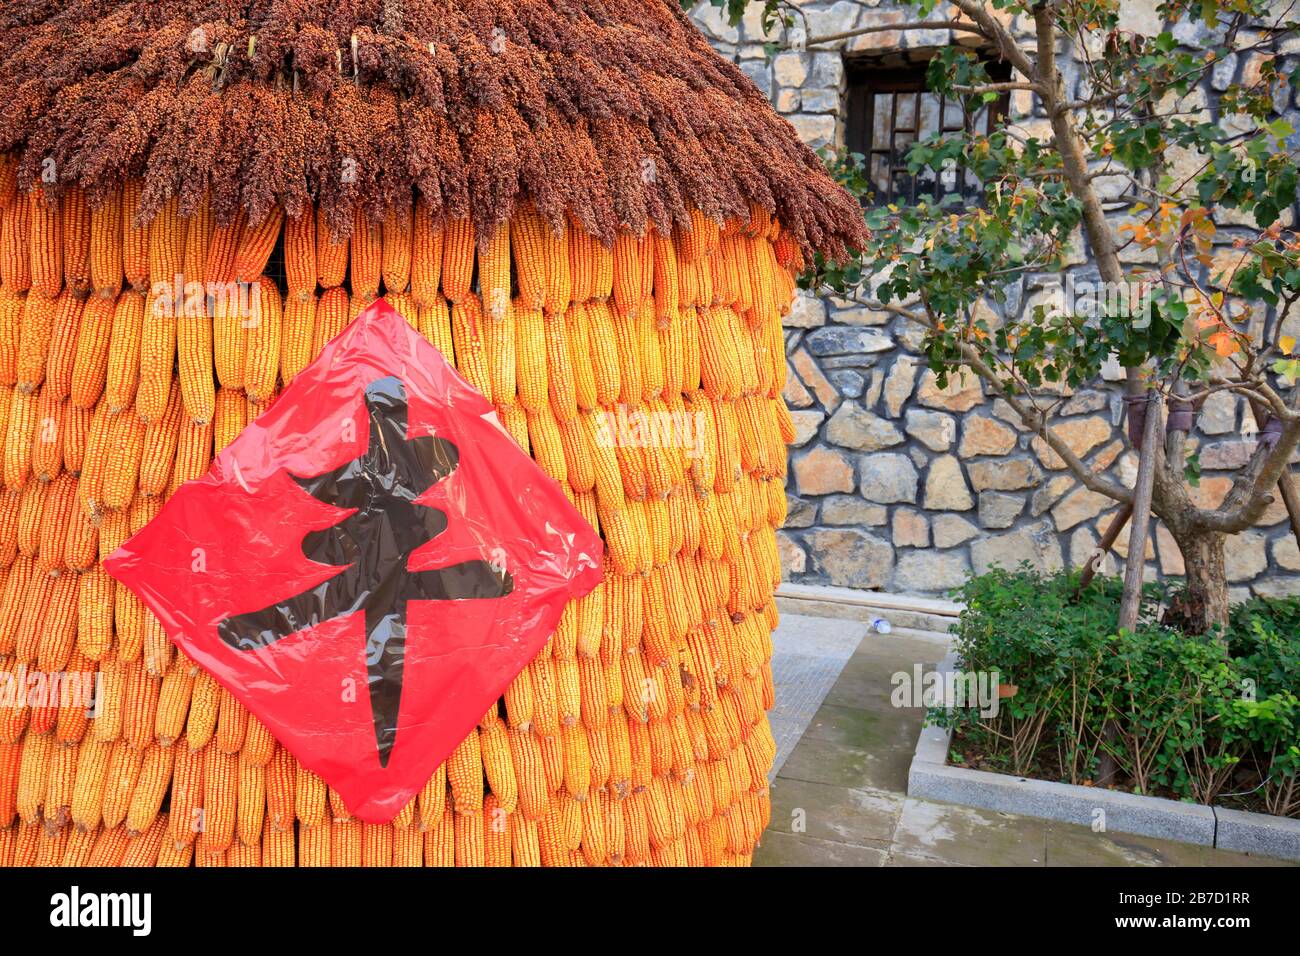 Le maïs séché mûre dans la ferme，traduction littérale chinoise: Bonne récolte Banque D'Images